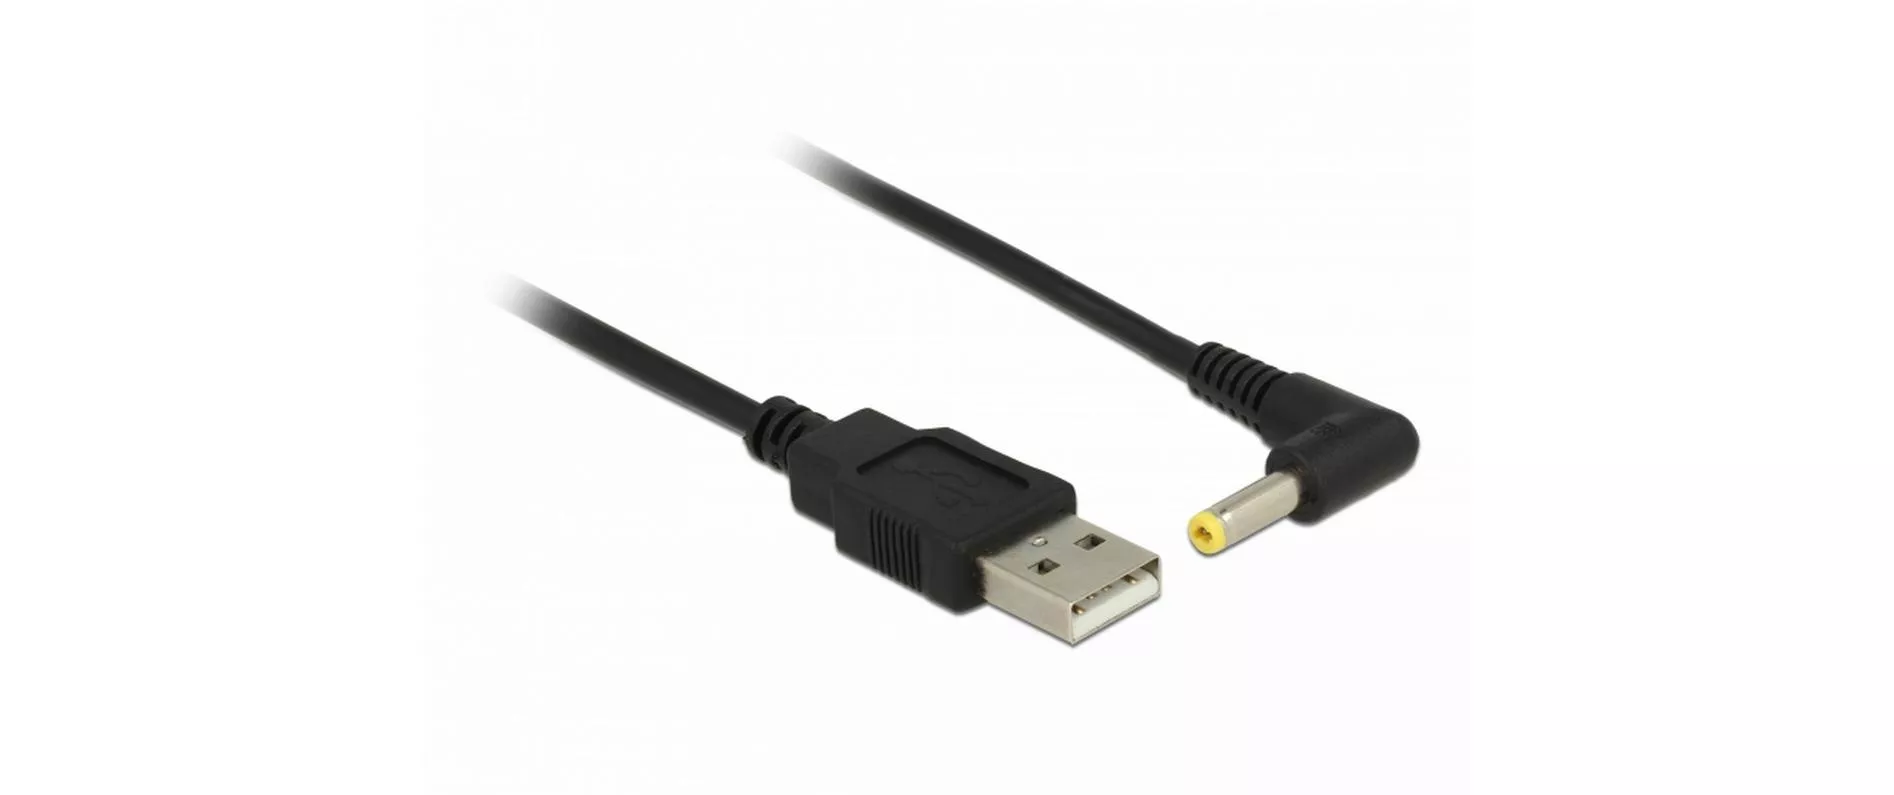 cavo di alimentazione USB Hollow Plug 4.0/1.7 mm USB A - Speciale 1,5 m